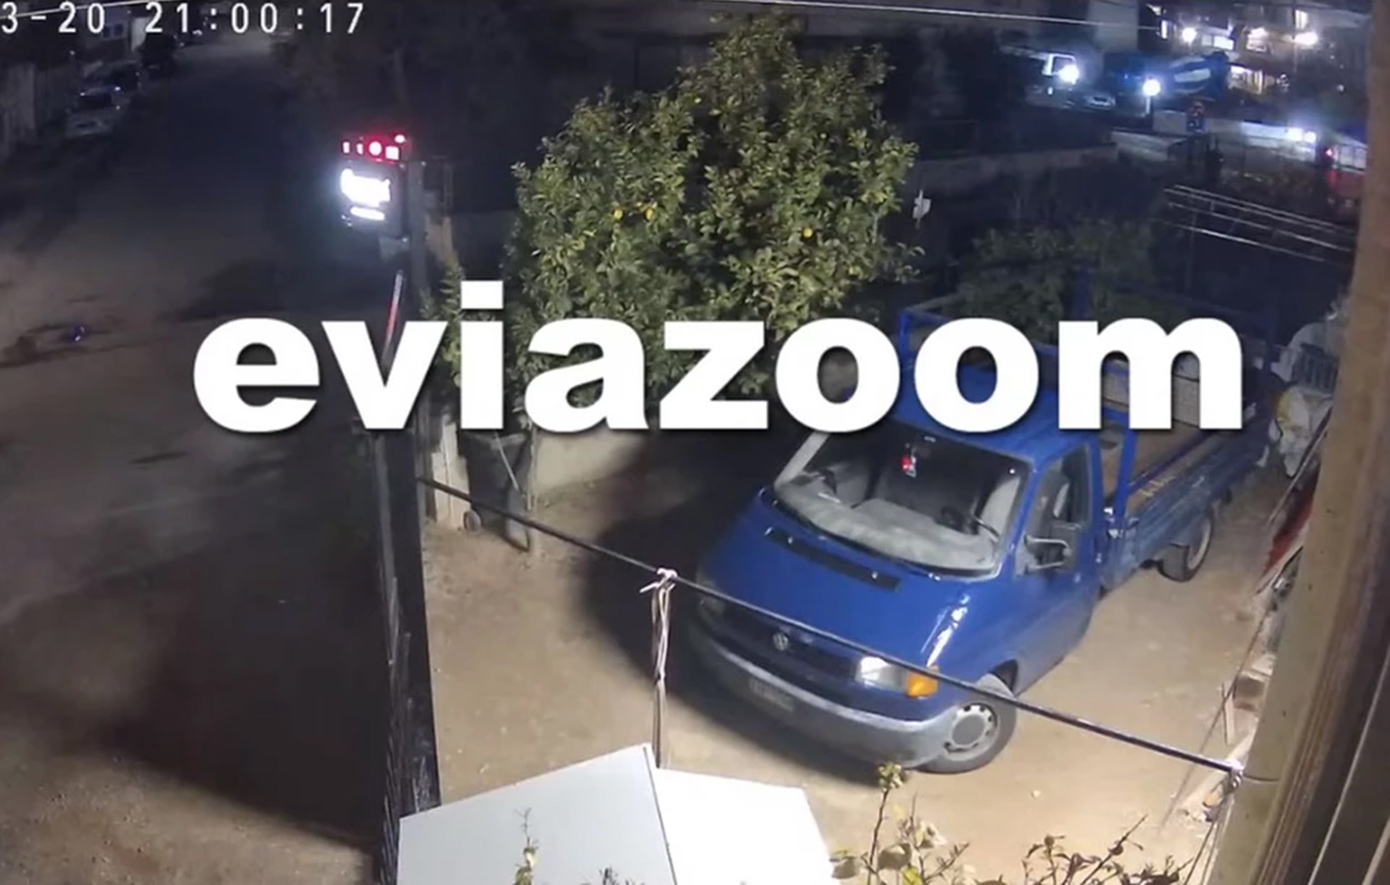 Βίντεο με αυτοκίνητο που χτυπά μηχανάκι και εγκαταλείπει το σημείο με ιλιγγιώδη ταχύτητα στη Χαλκίδα